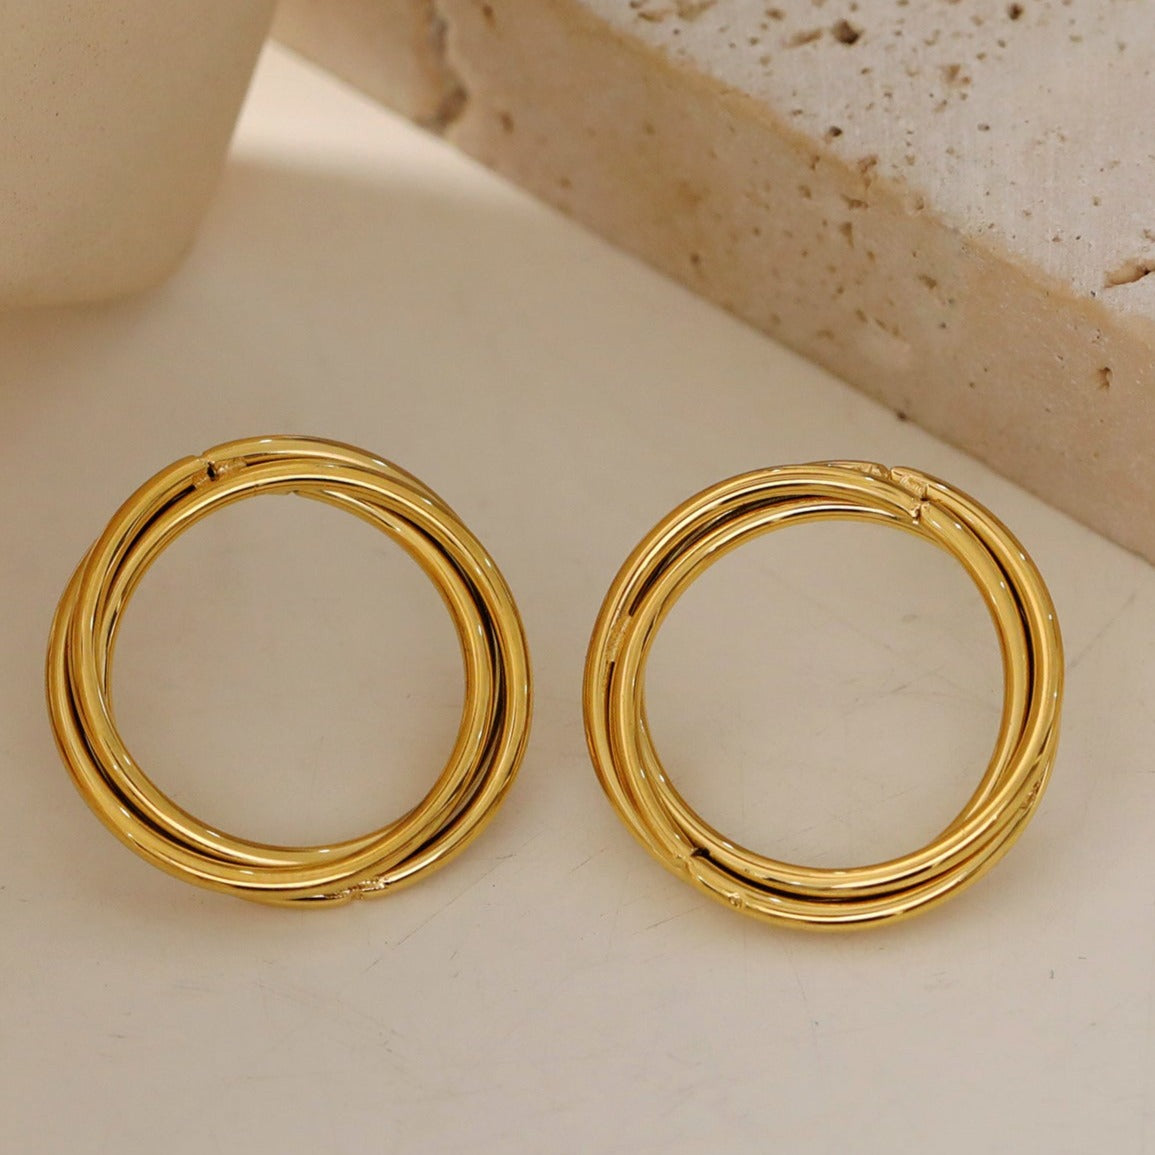 Style DELISIAS 49936: Triple Harmony - Three Overlapping Rings Hoop Earrings